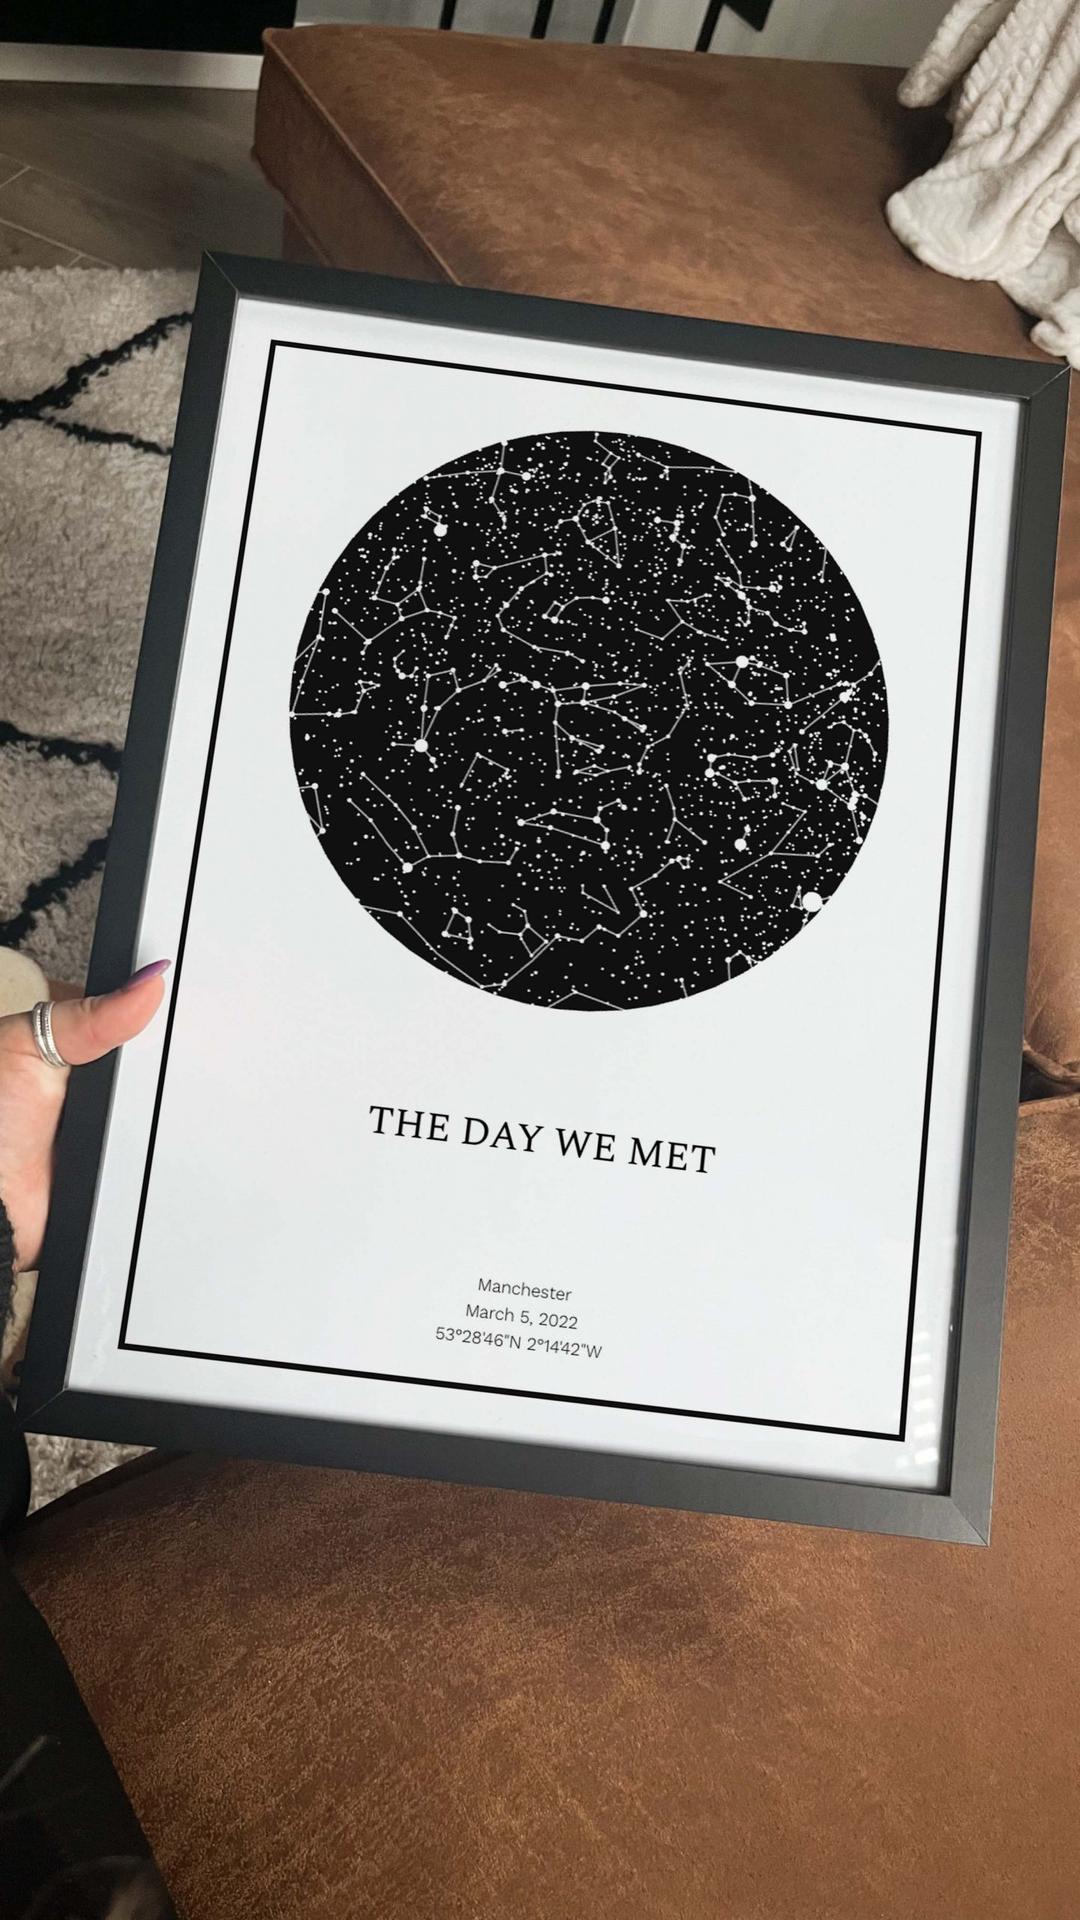 The day we met